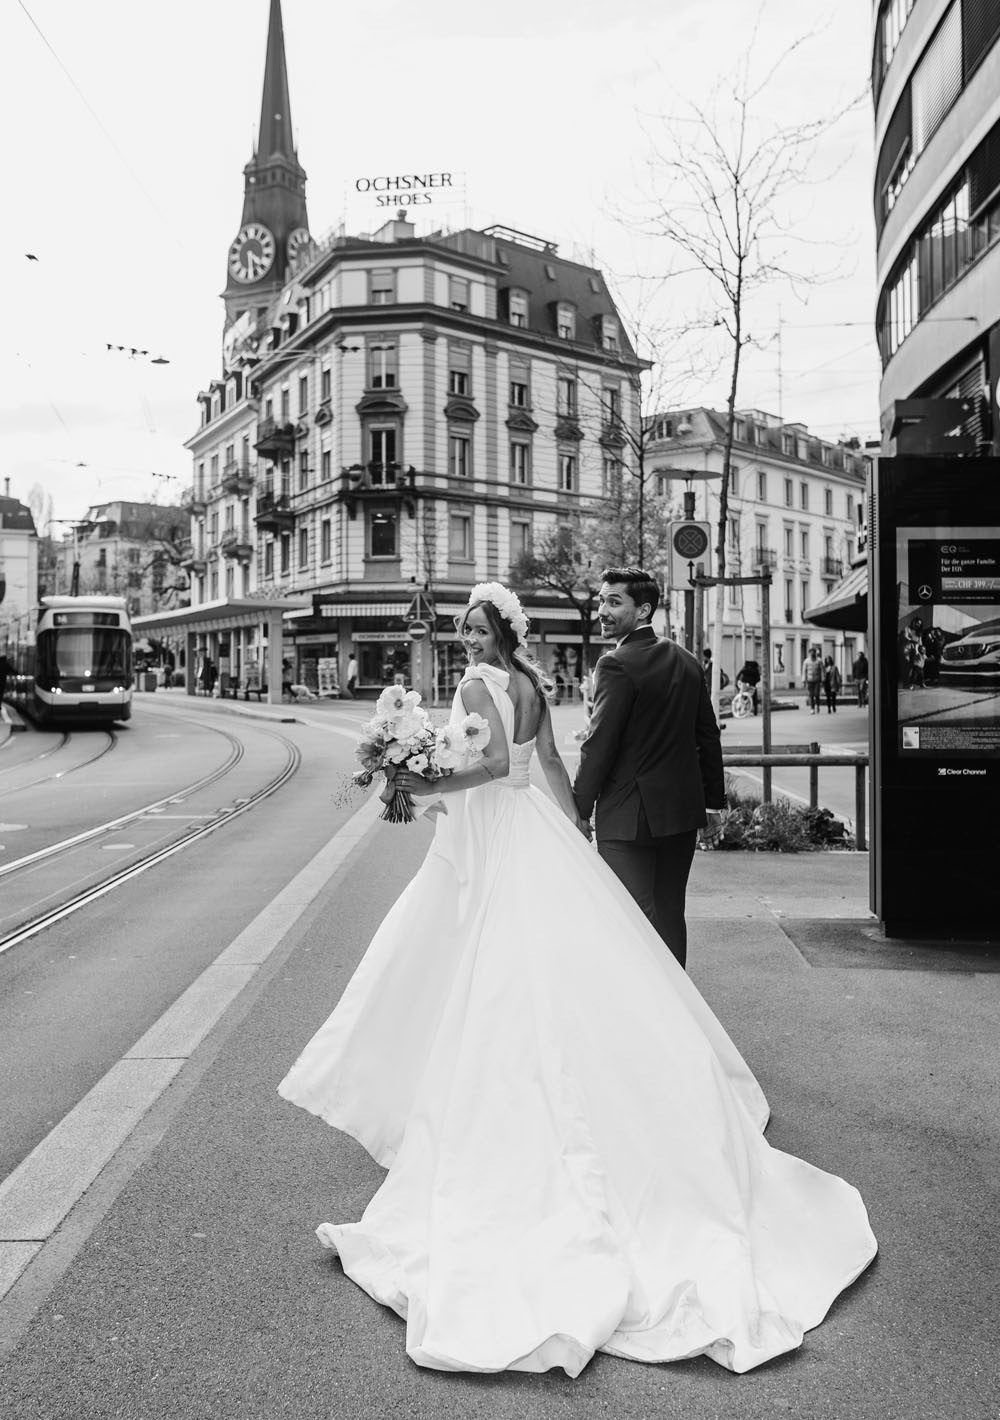 A modern elopement in the heart of Zurich